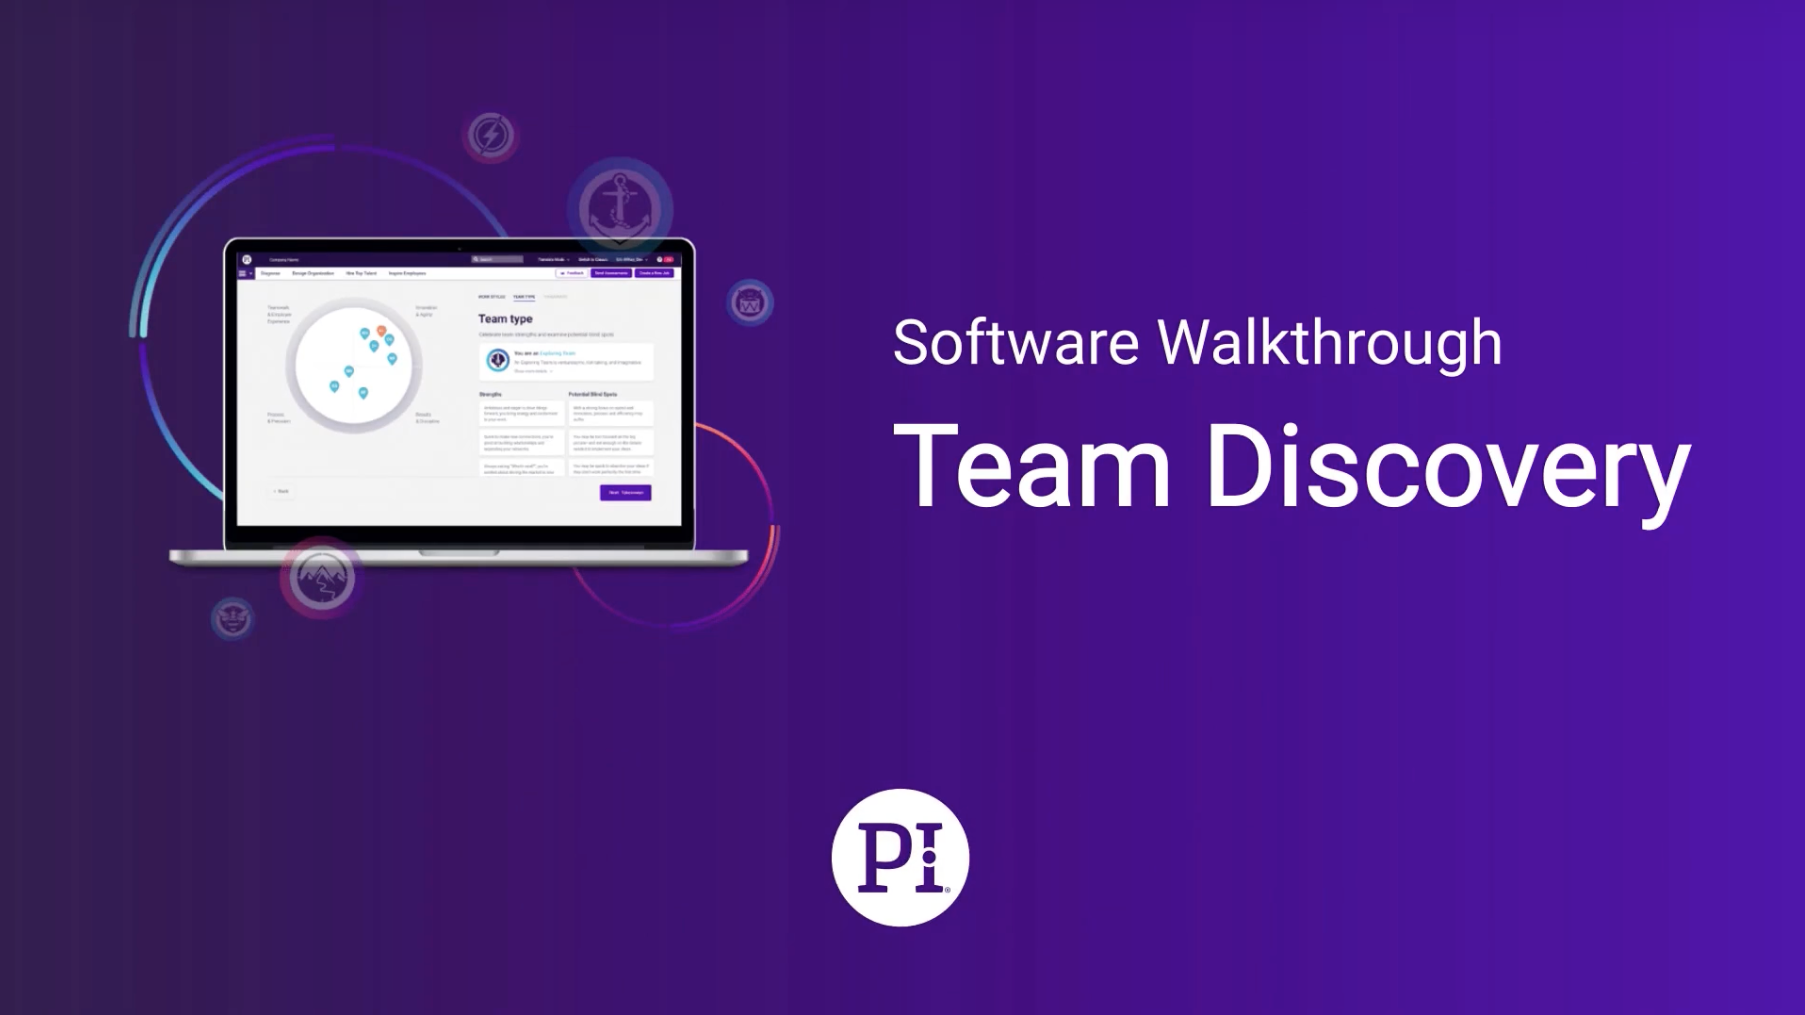 PI Team Discovery Software Walkthrough